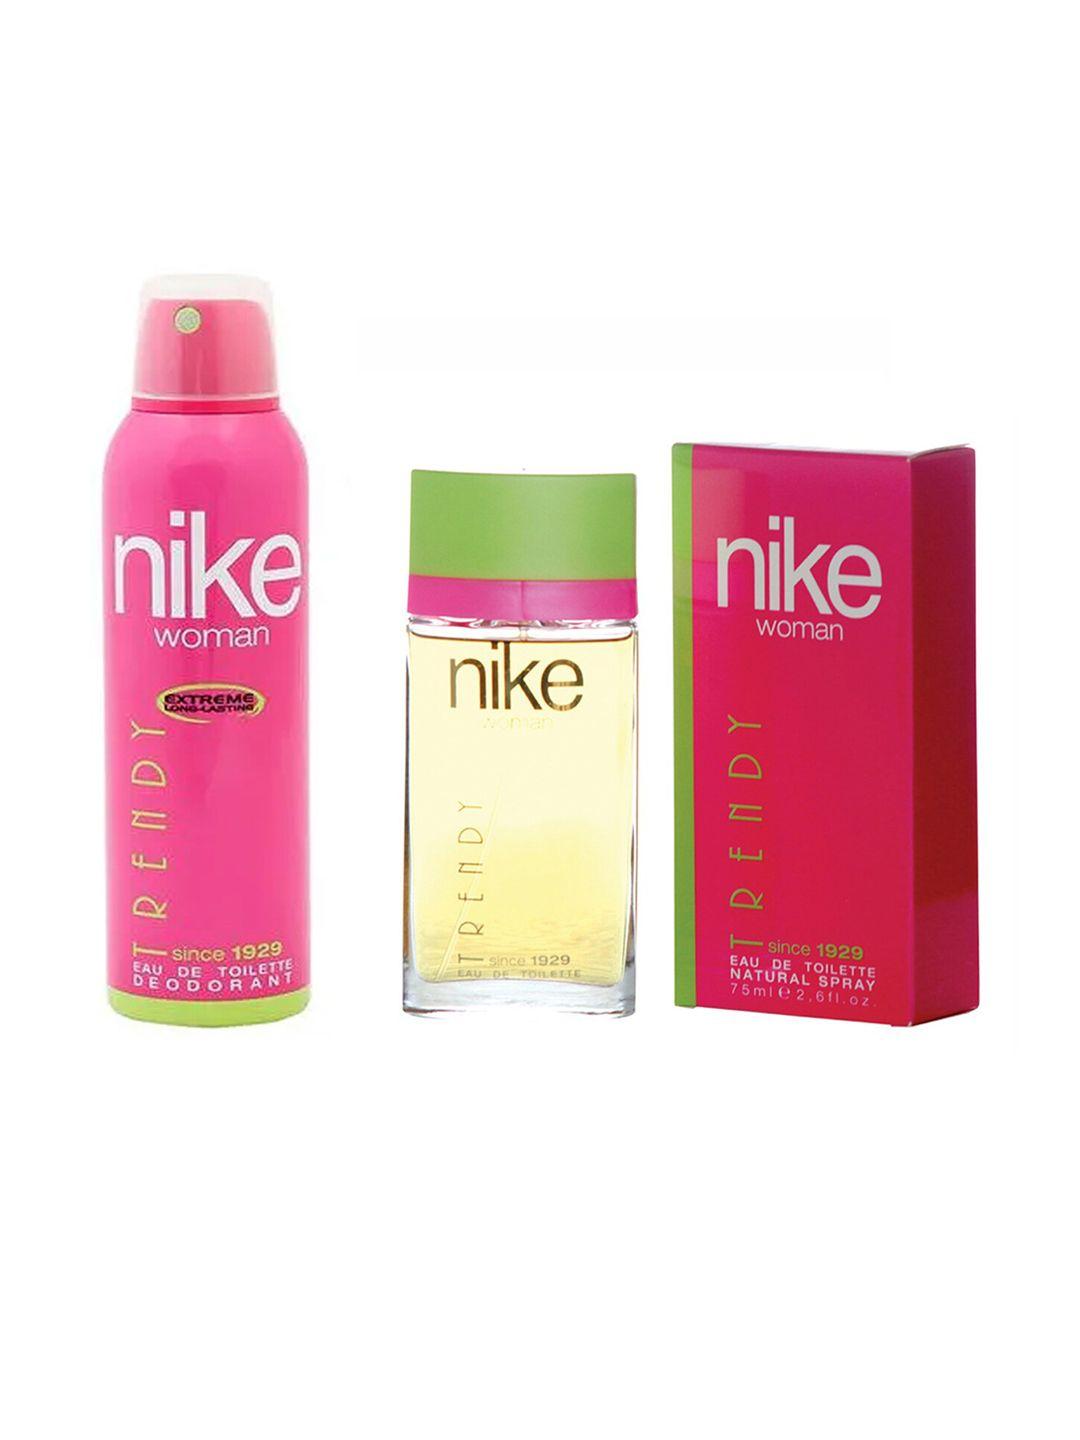 nike women set of trendy since 1929 deodorant 200 ml & eau de toilette 75 ml